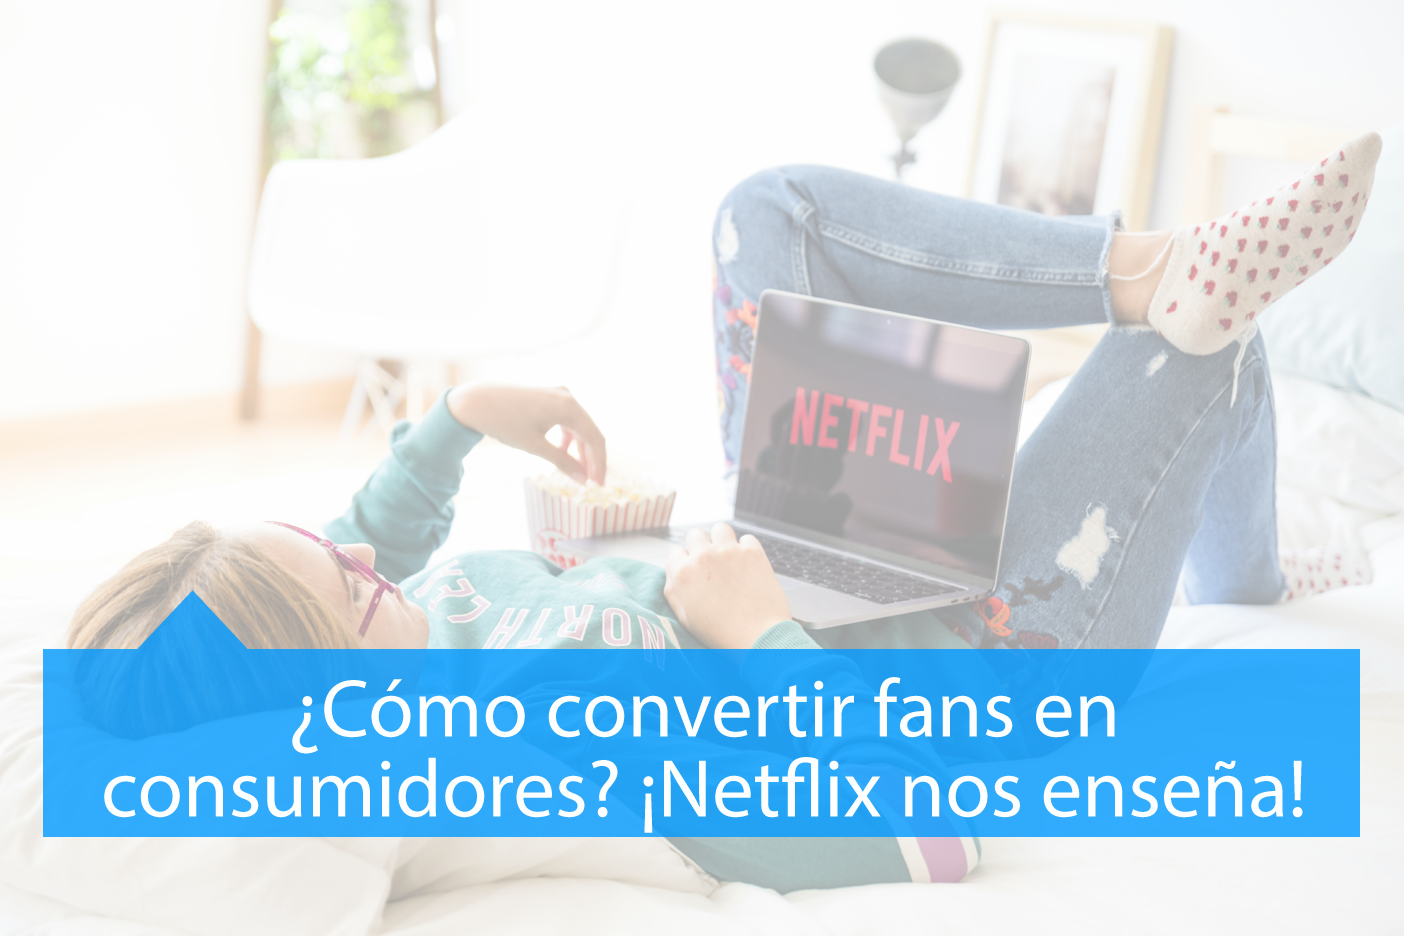 Netflix nos enseña convertir Fans en Consumidores